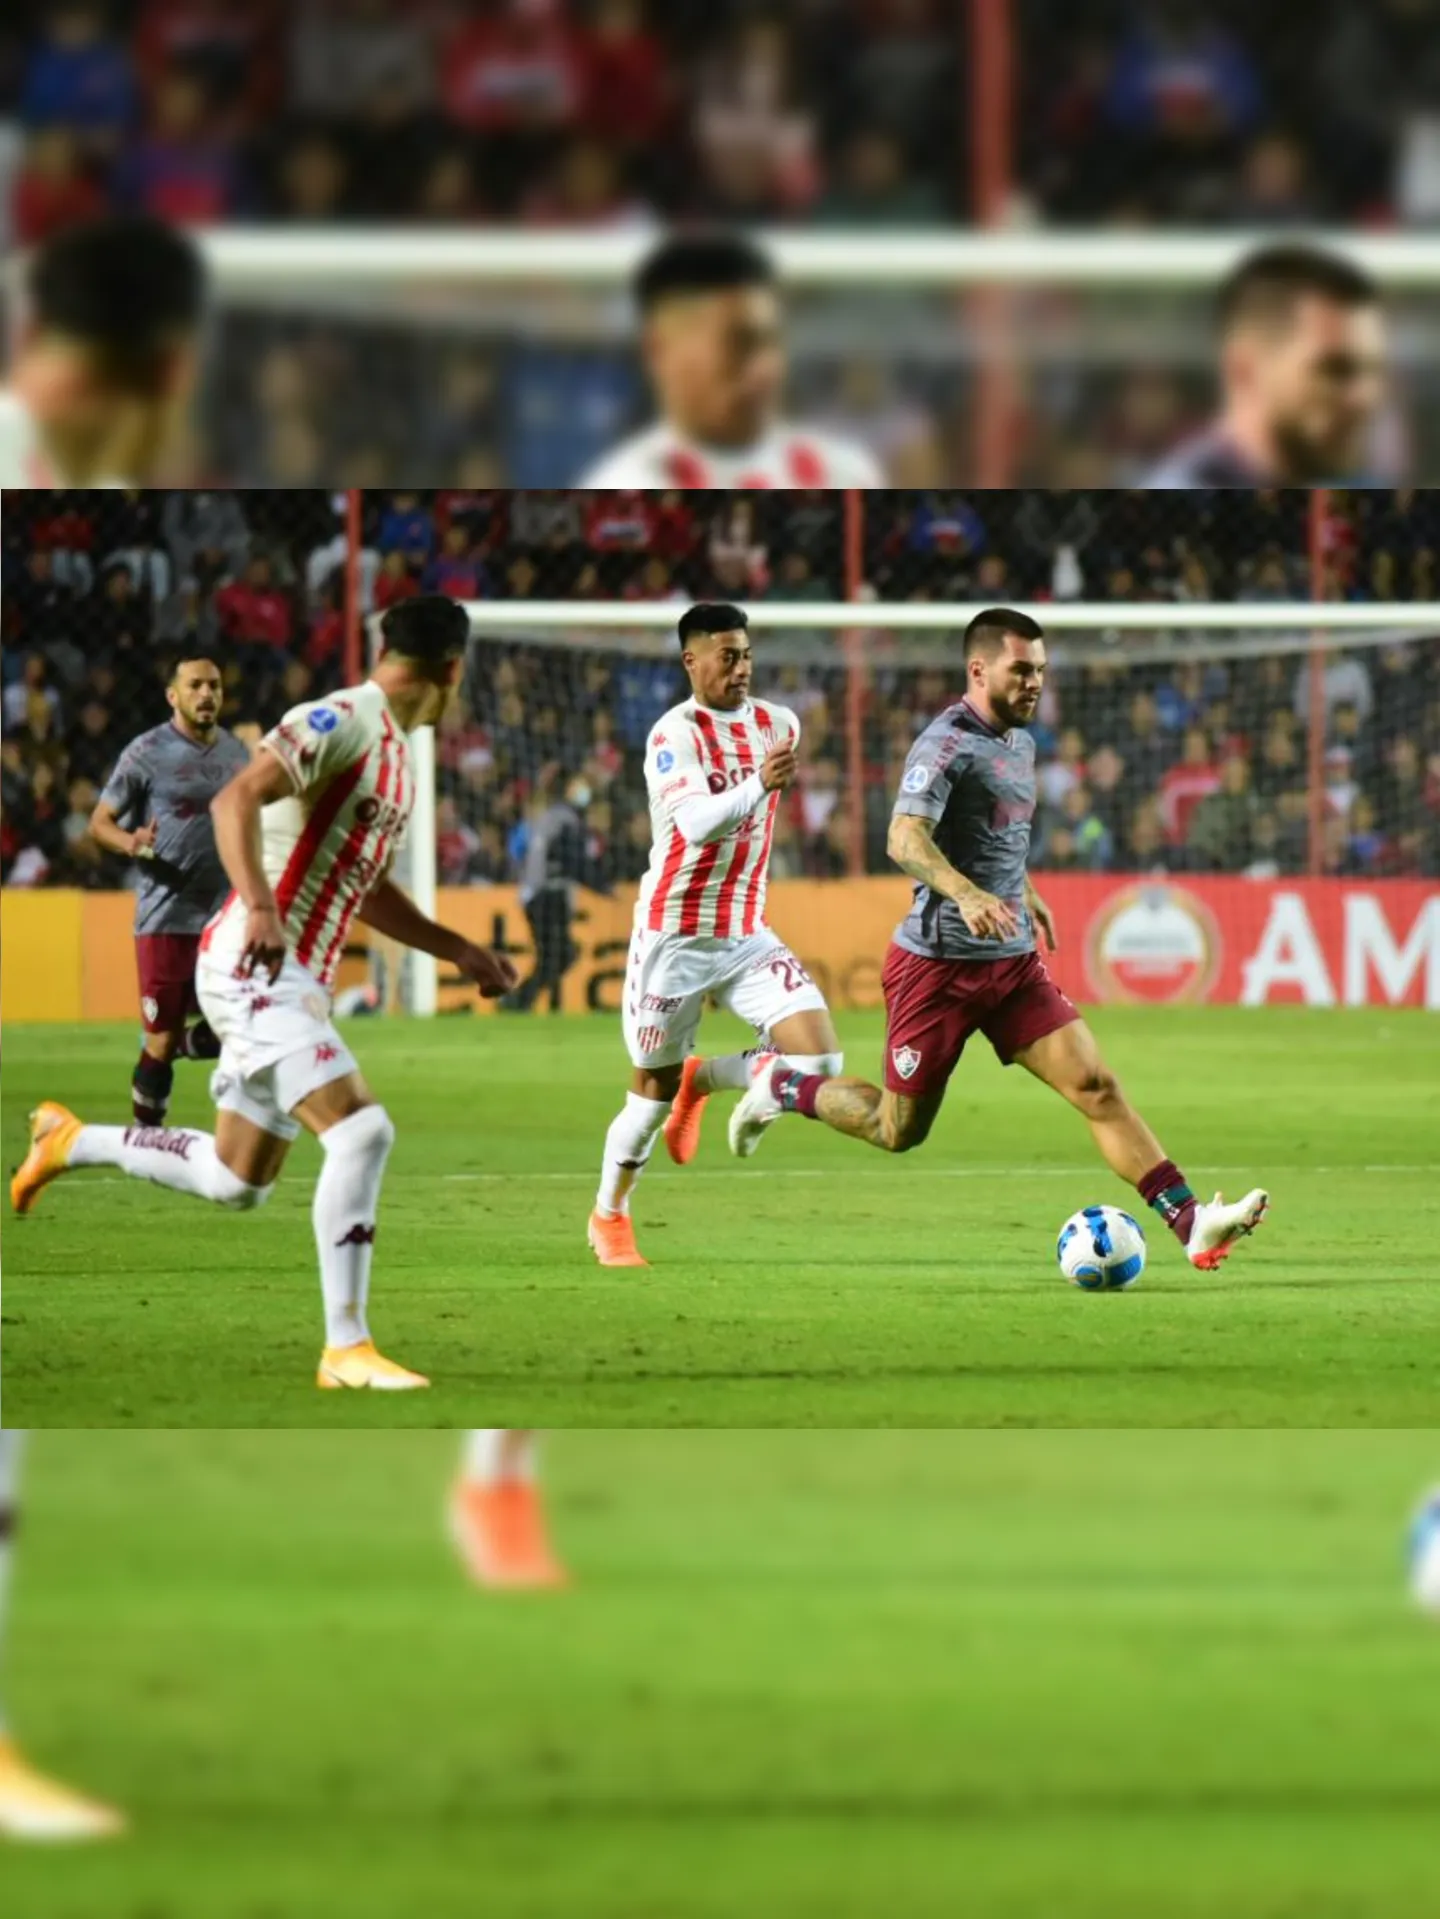 Empate por 0 a 0 diante do Unión Santa Fé, na Argentina, complicou o Fluminense na Sul-Americana